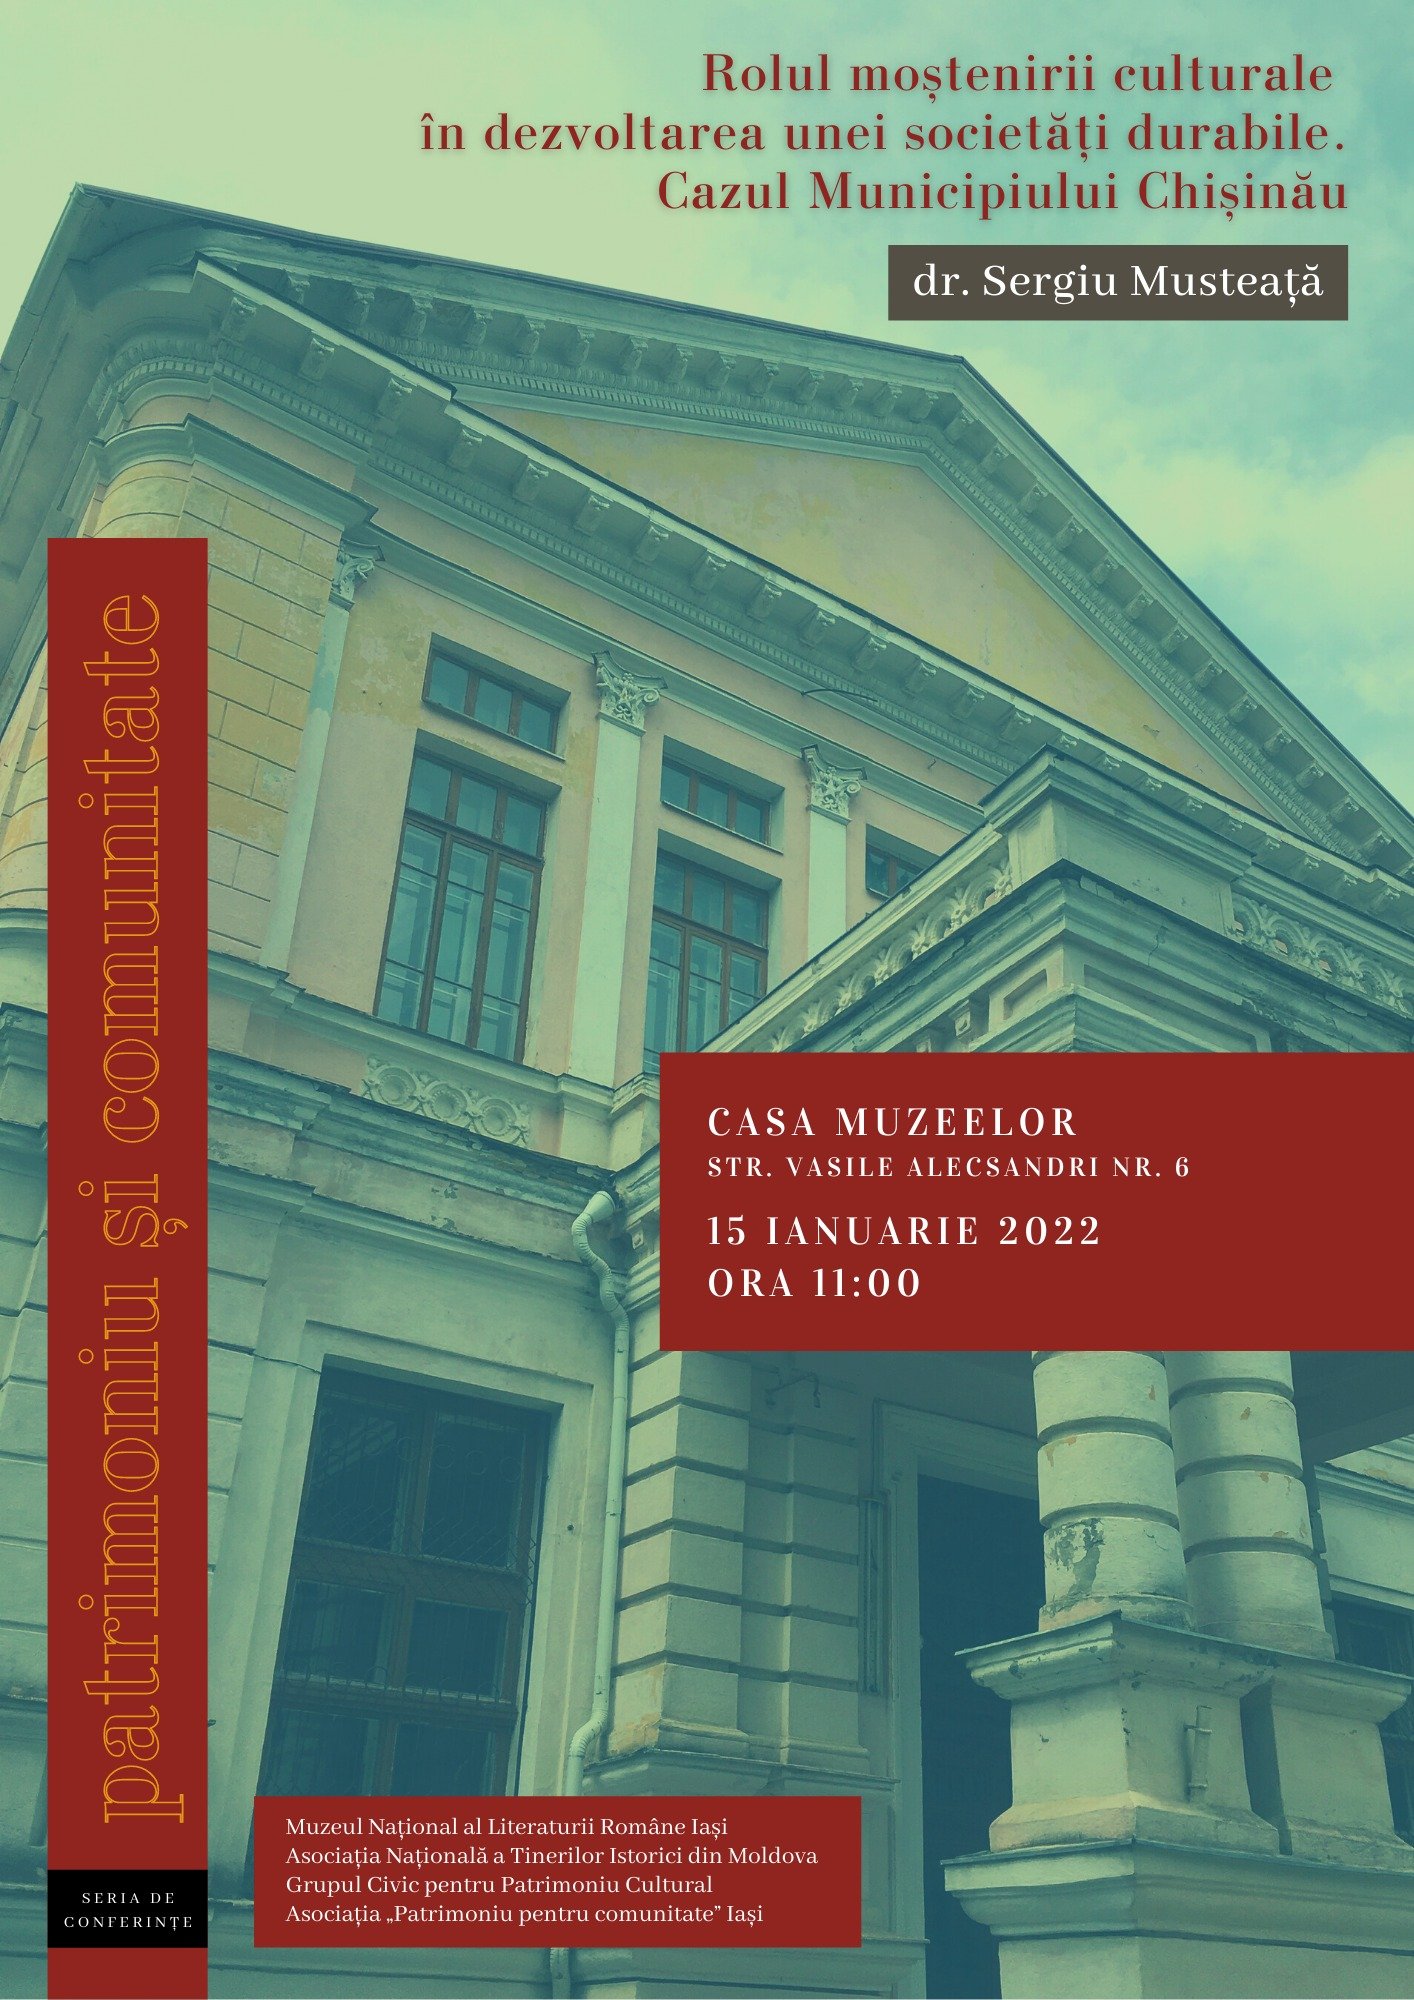  Serie de conferinţe pe teme de patrimoniu la Casa Muzeelor din Iași